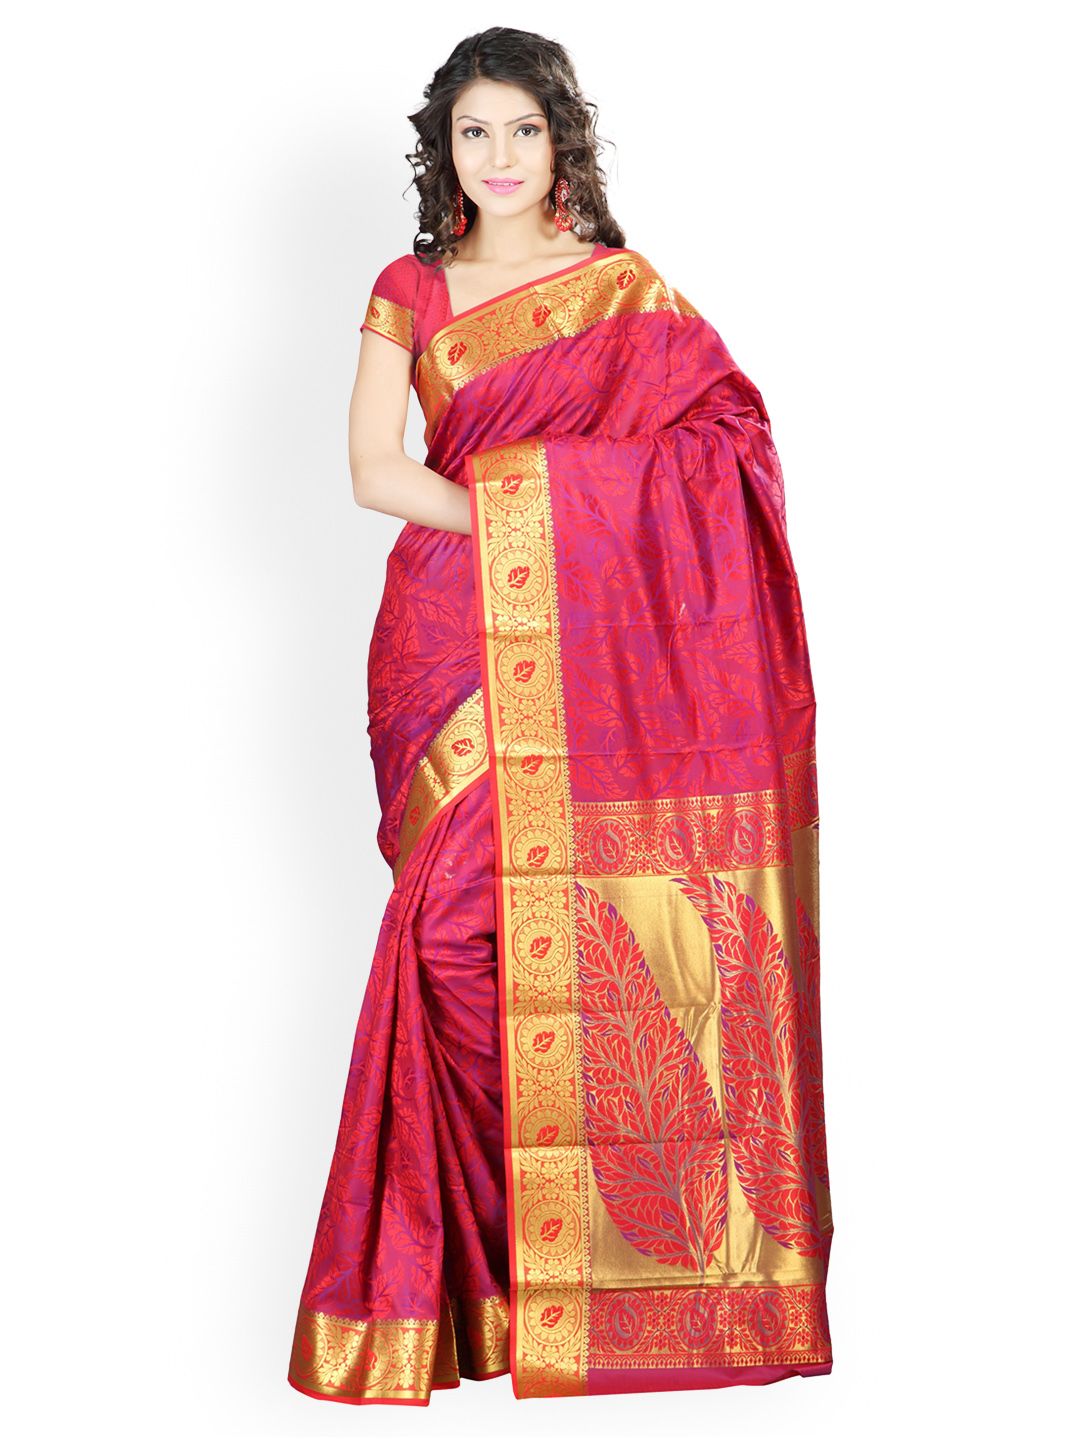 Varkala Silk Sarees Red Jacquard Traditional Saree Price in India